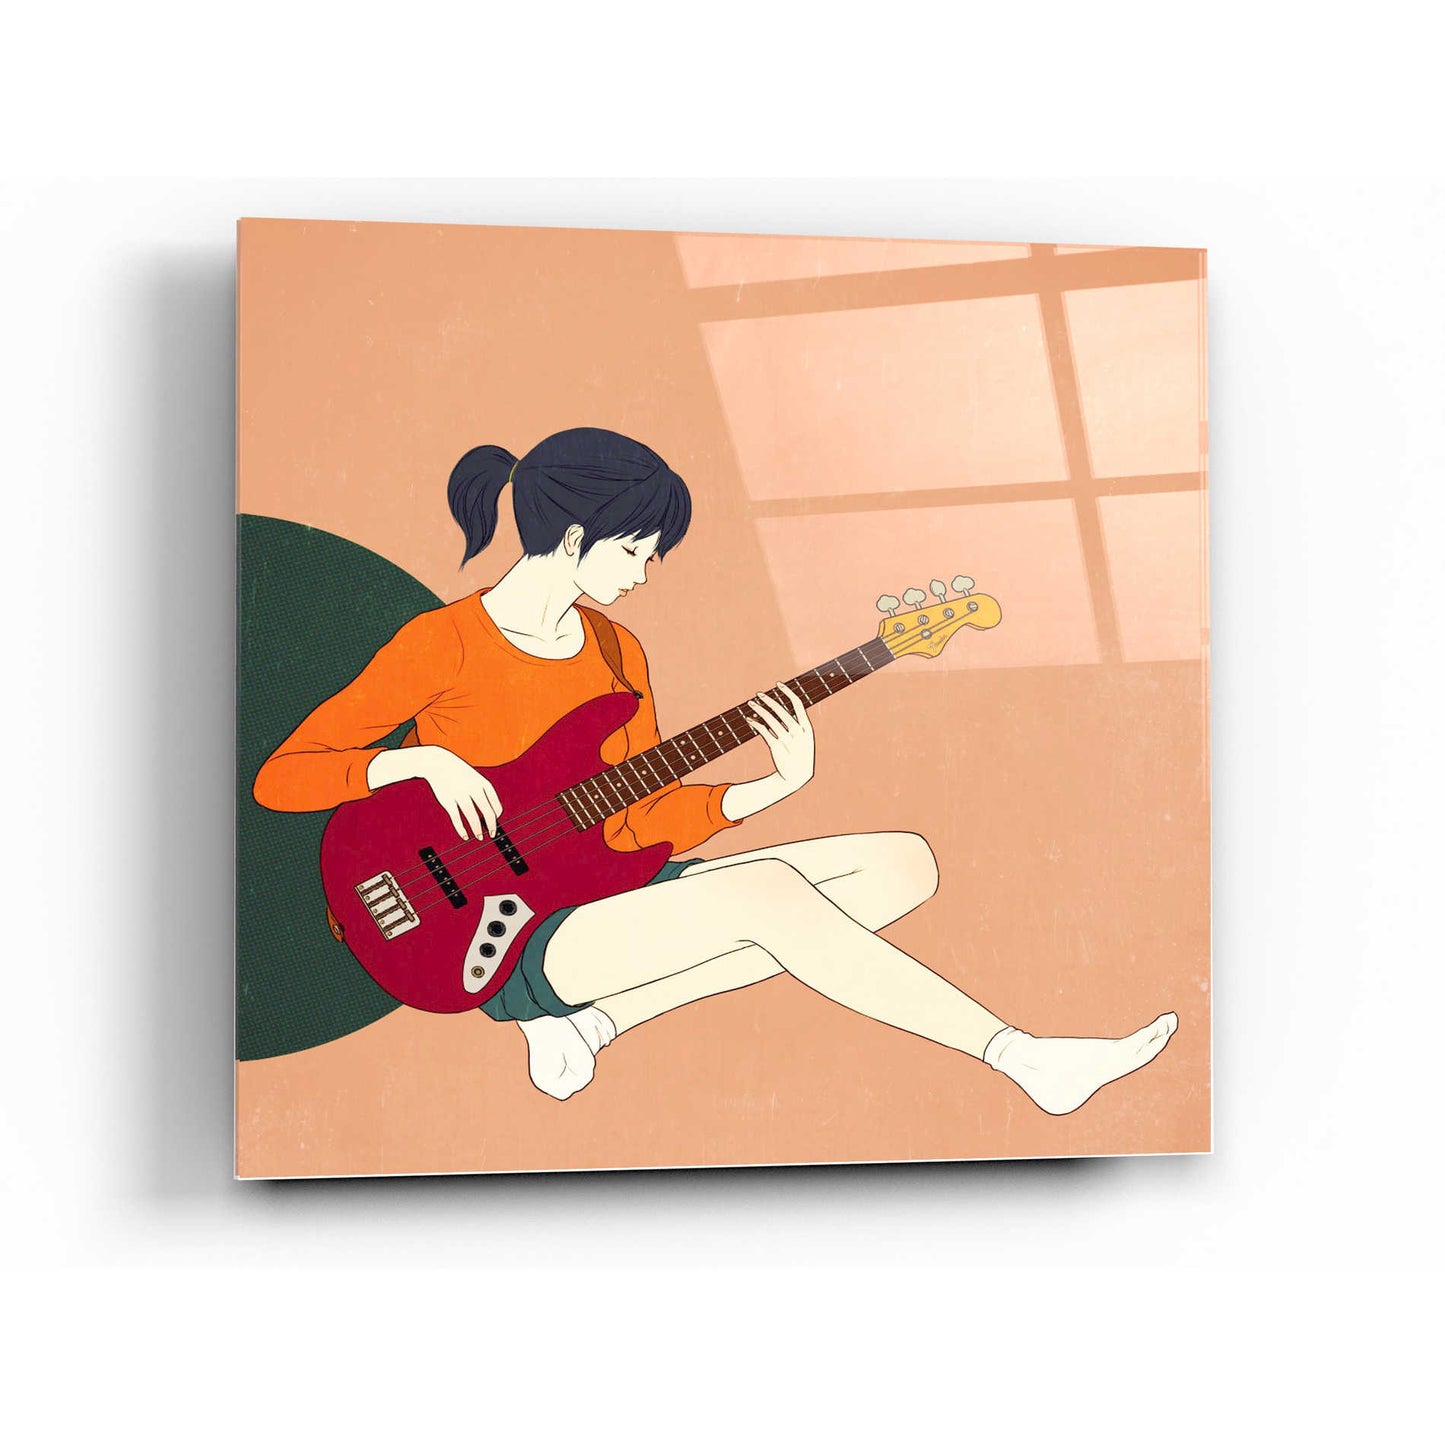 Epic Art 'Playing The Bass' by Sai Tamiya, Acrylic Glass Wall Art,36x36